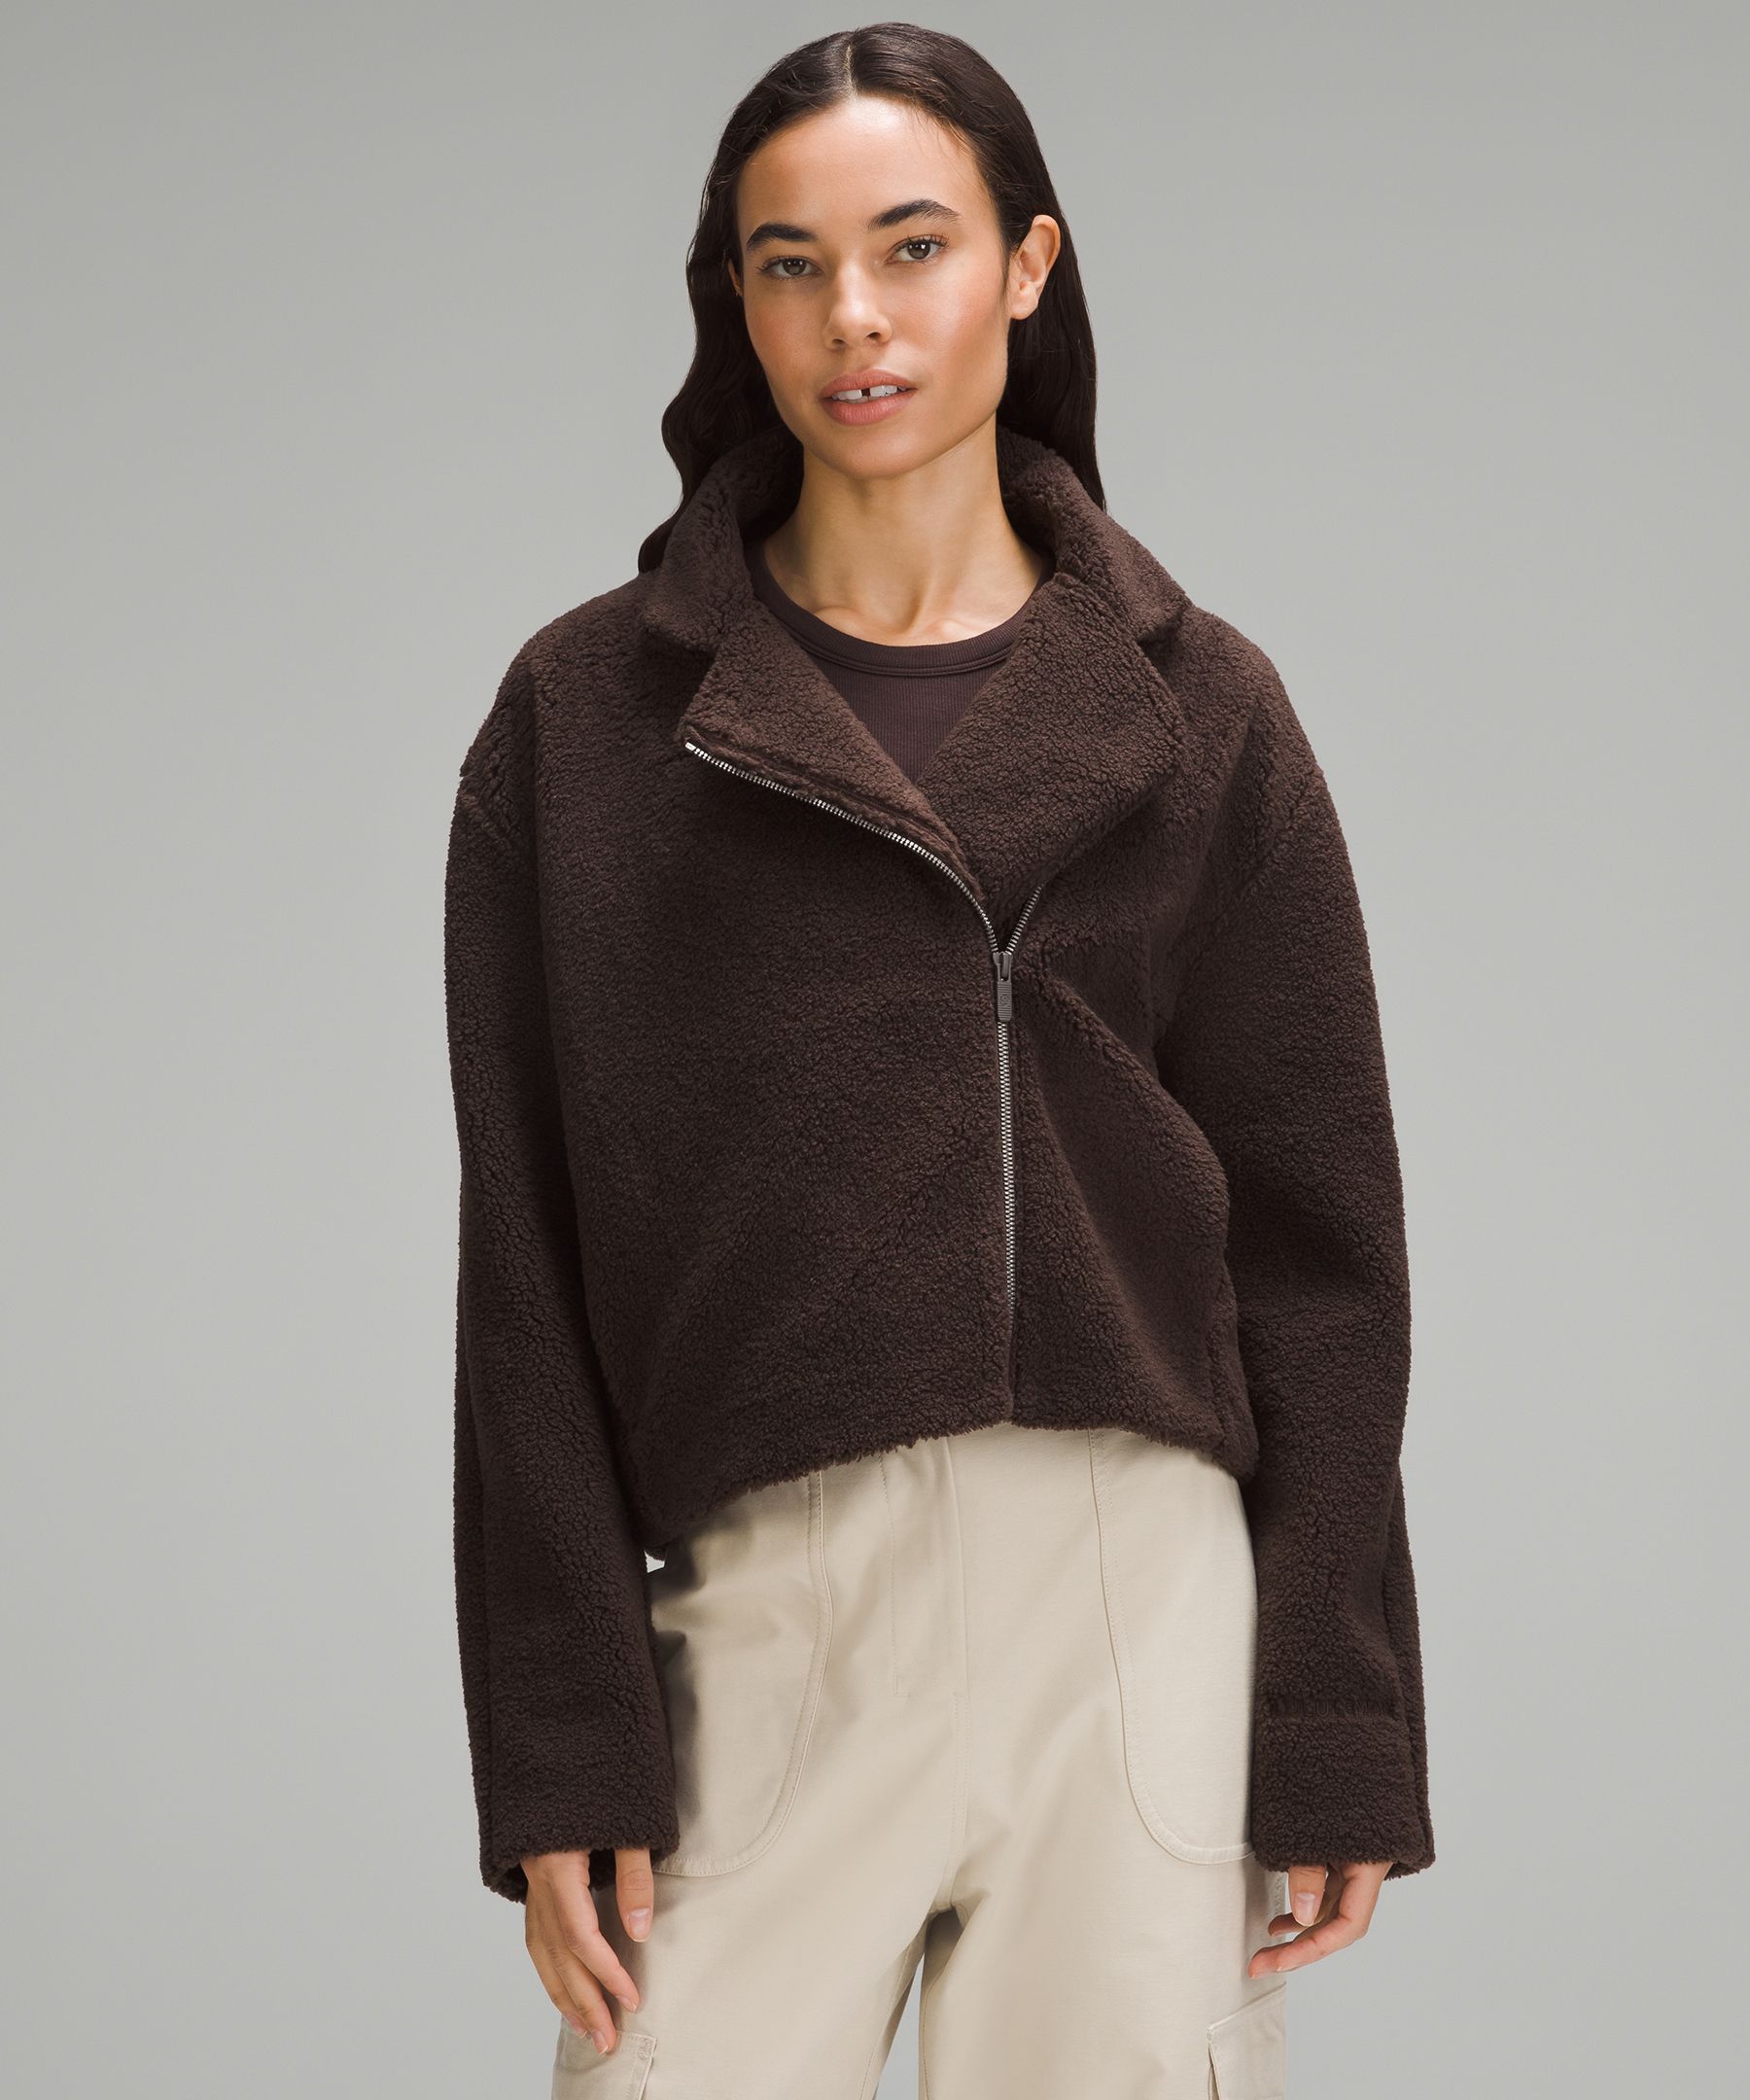 Textured Fleece Collared Jacket  Women's Hoodies & Sweatshirts